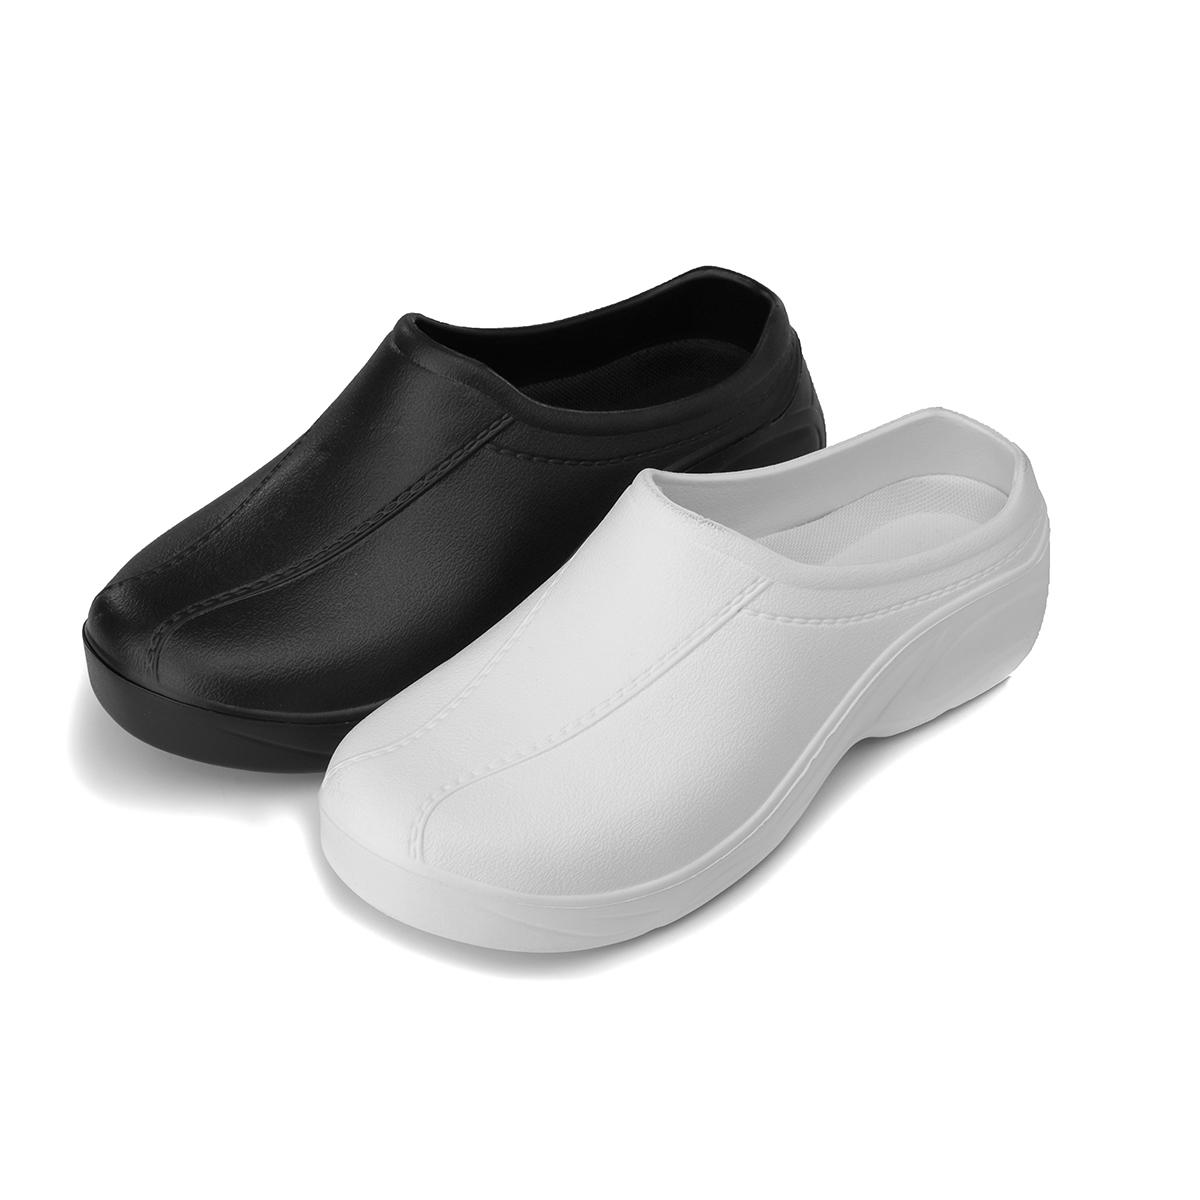 Mulheres Non-Slip Shoes Plano EVA Resistente Penetrante Gas Doctor Enfermeira Praia Sapatos